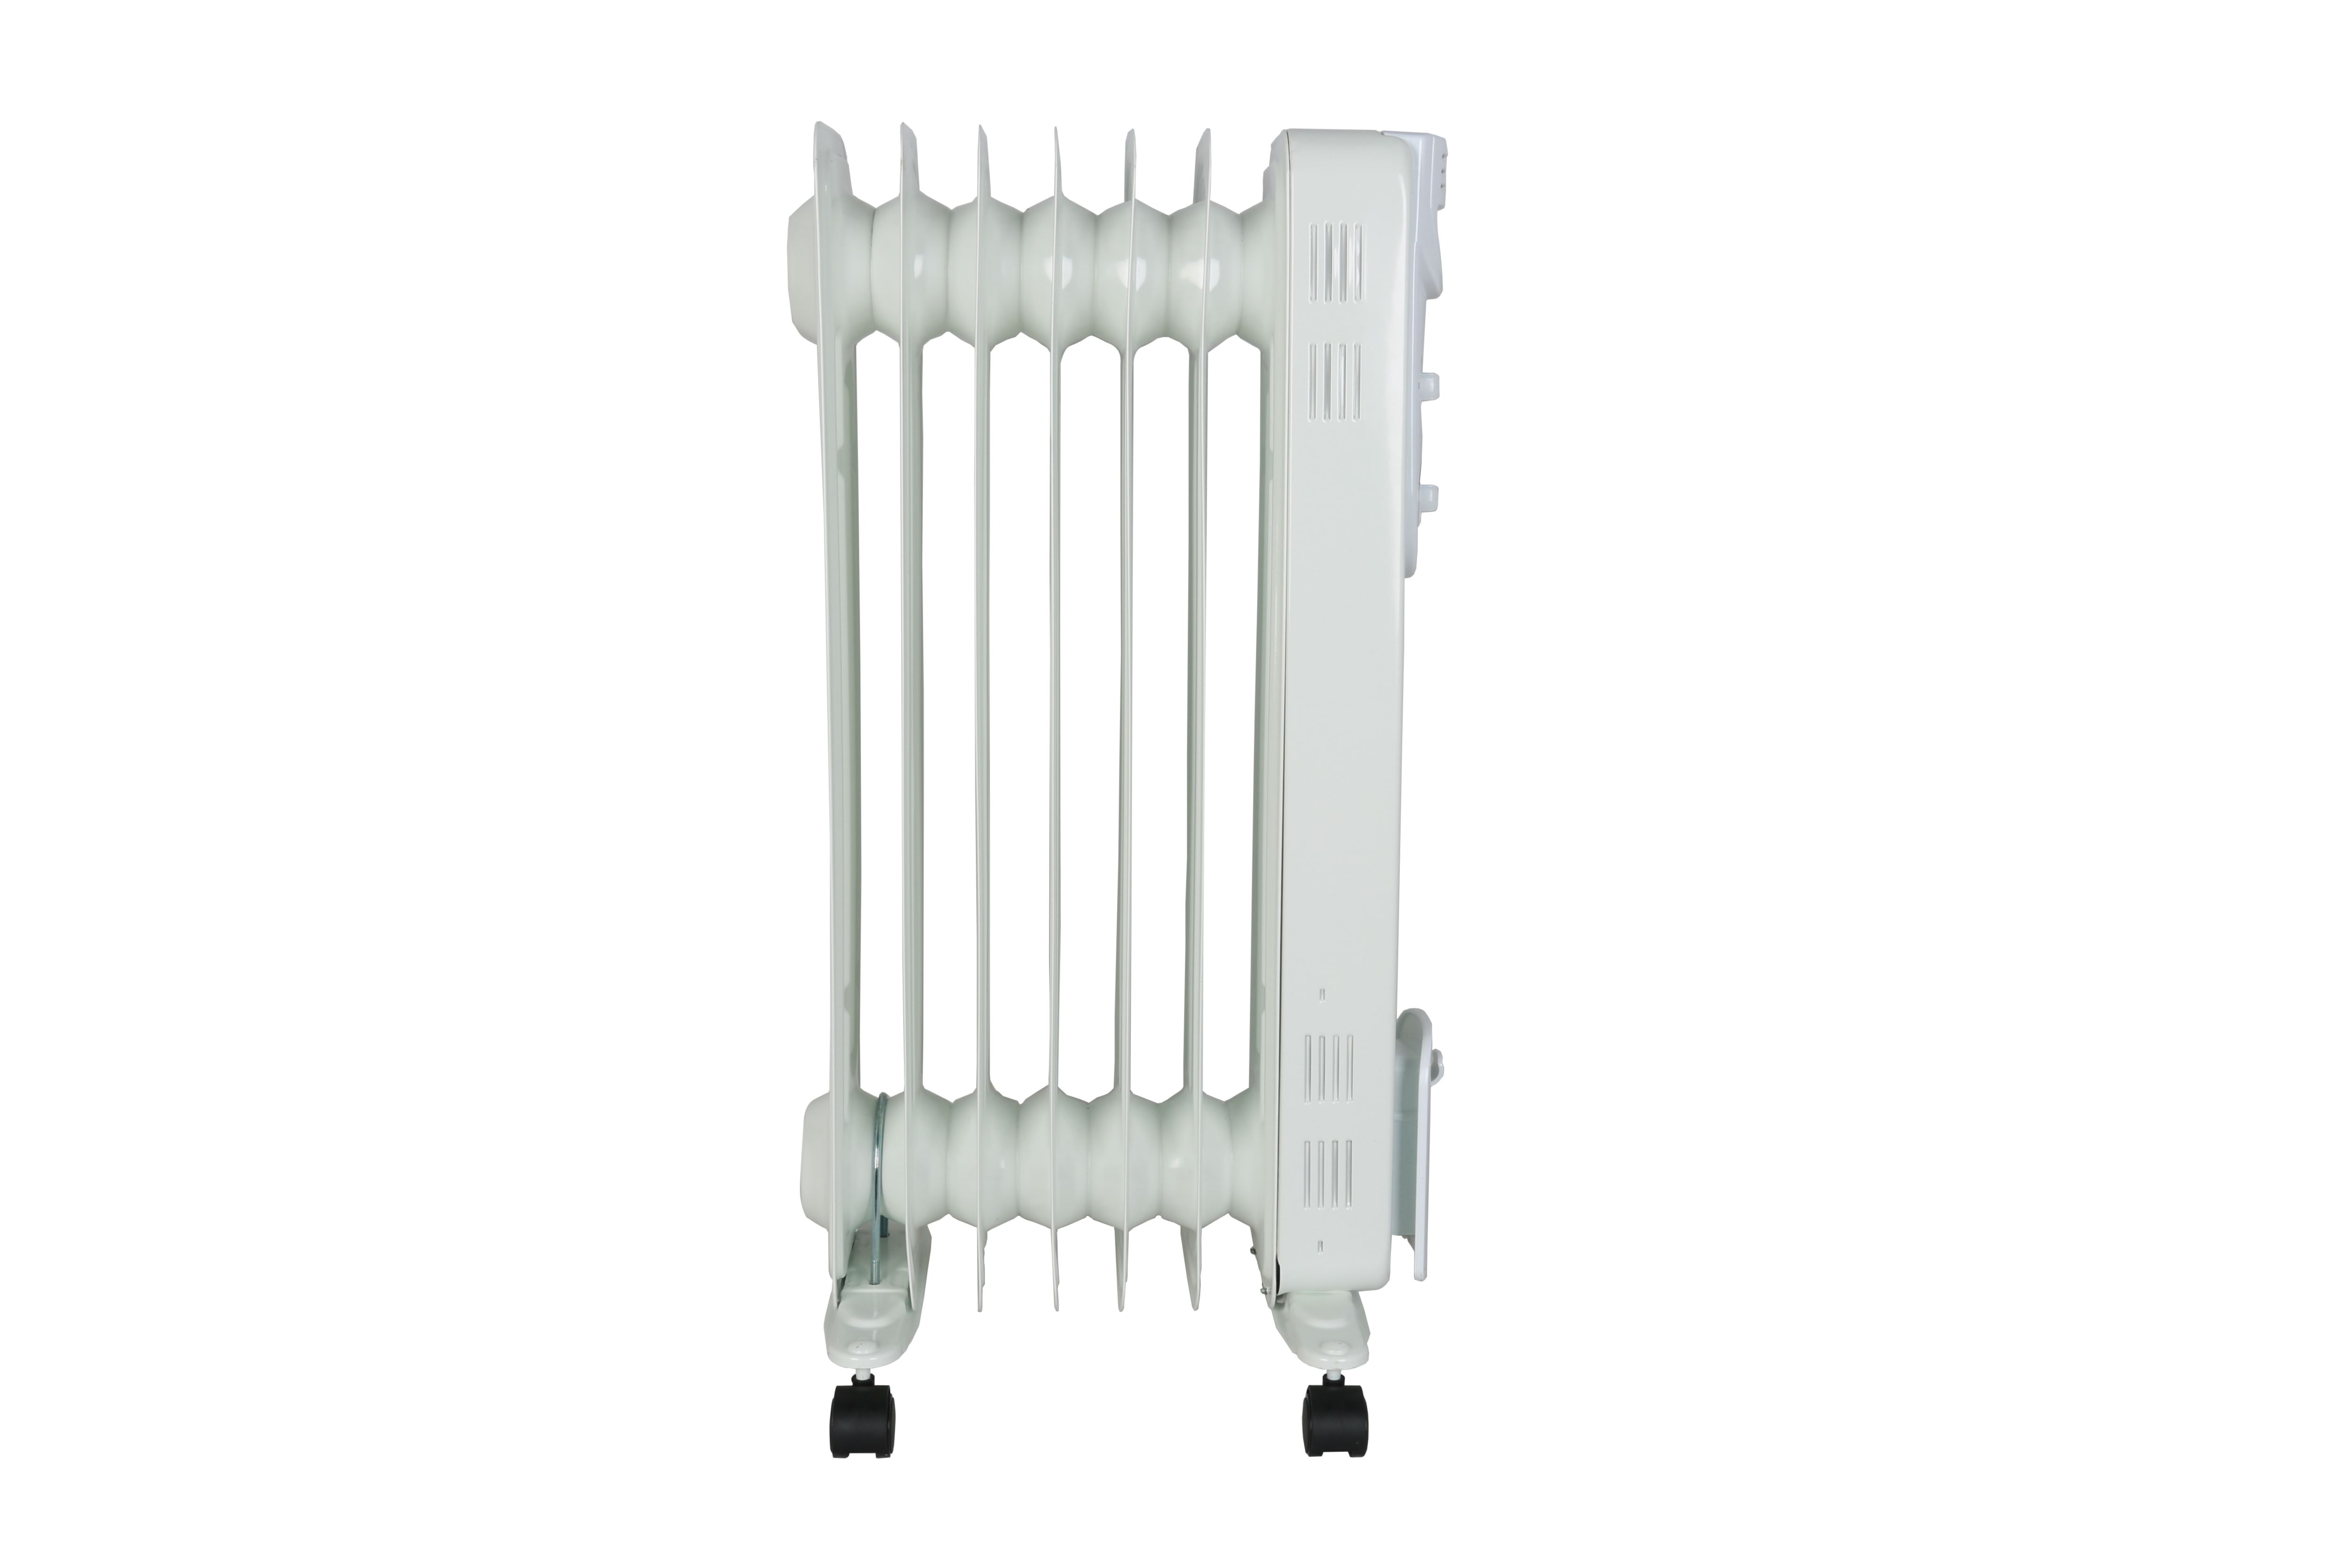 1500W White Oil-filled radiator